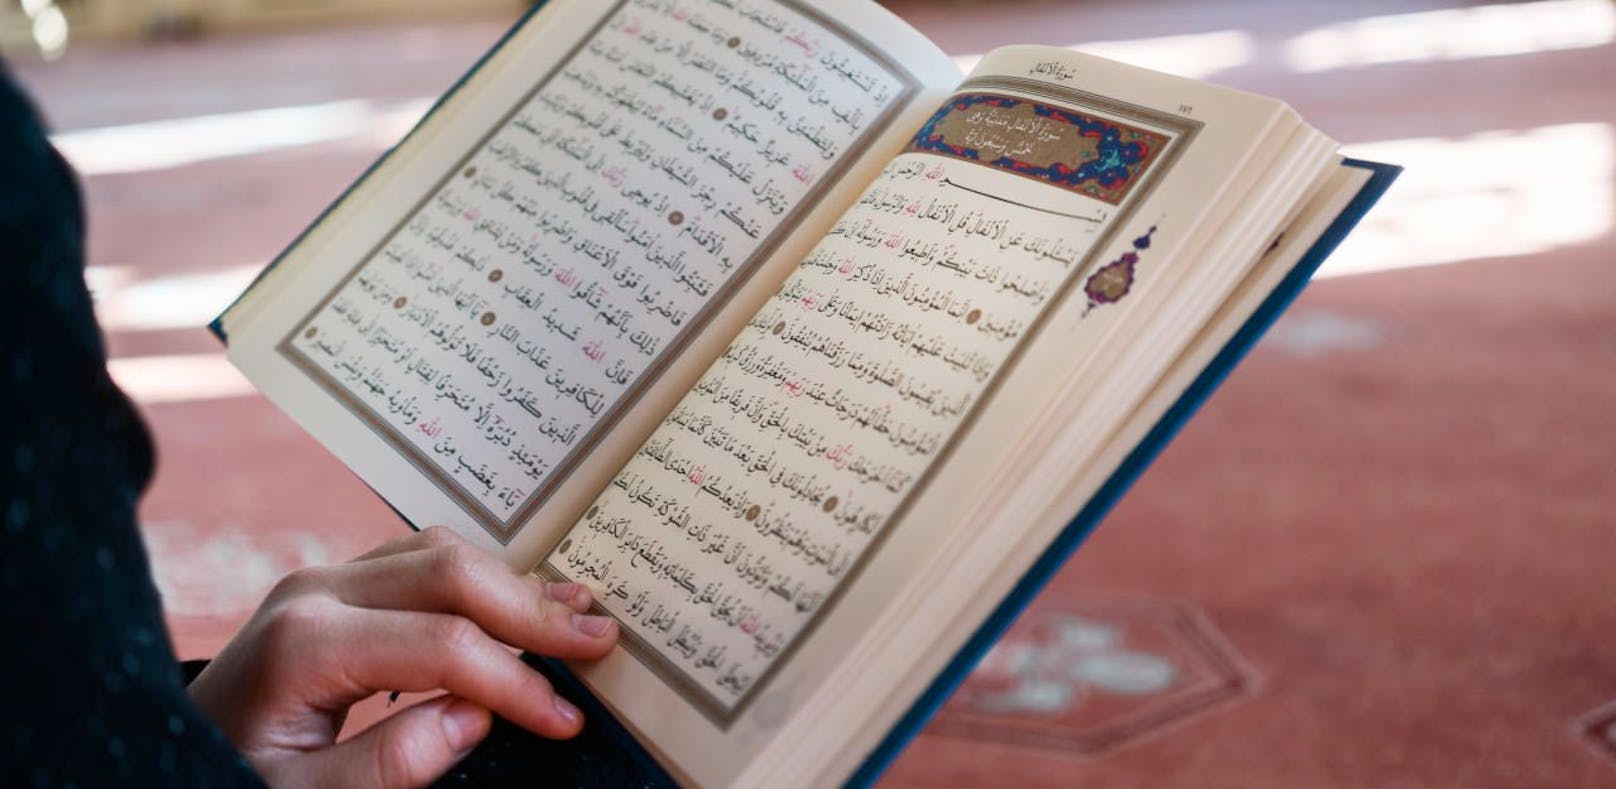 (Symbolbild) Die Richterin verurteilte die muslimischen Jugendlichen zum Koran-Studium, weil sie Christen beleidigt hatten.